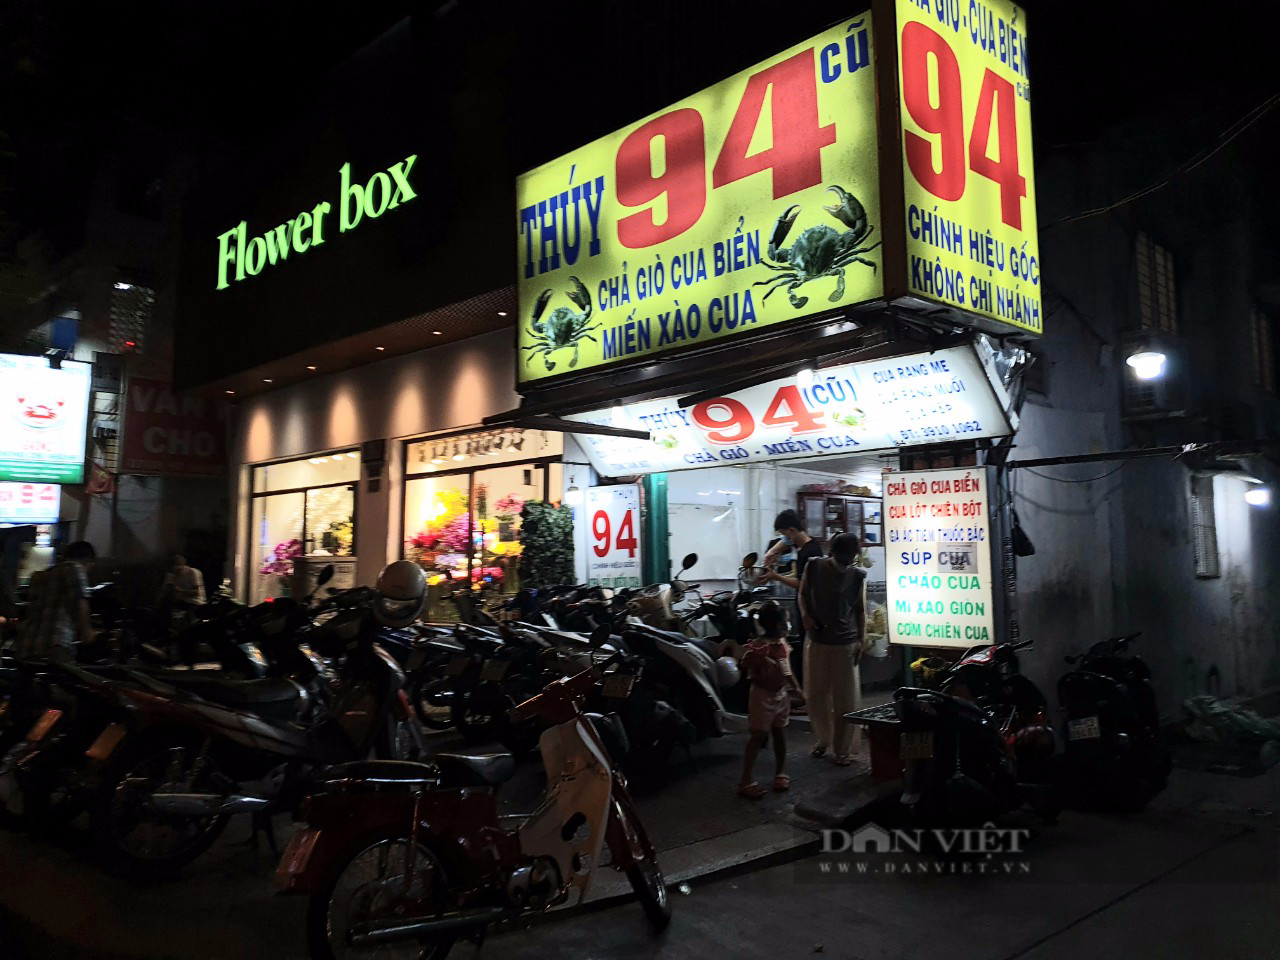 Quán chả giò, miến cua nổi tiếng ở trung tâm Sài Gòn, có đặc sản cua lột &quot;nổi như cồn&quot; - Ảnh 5.